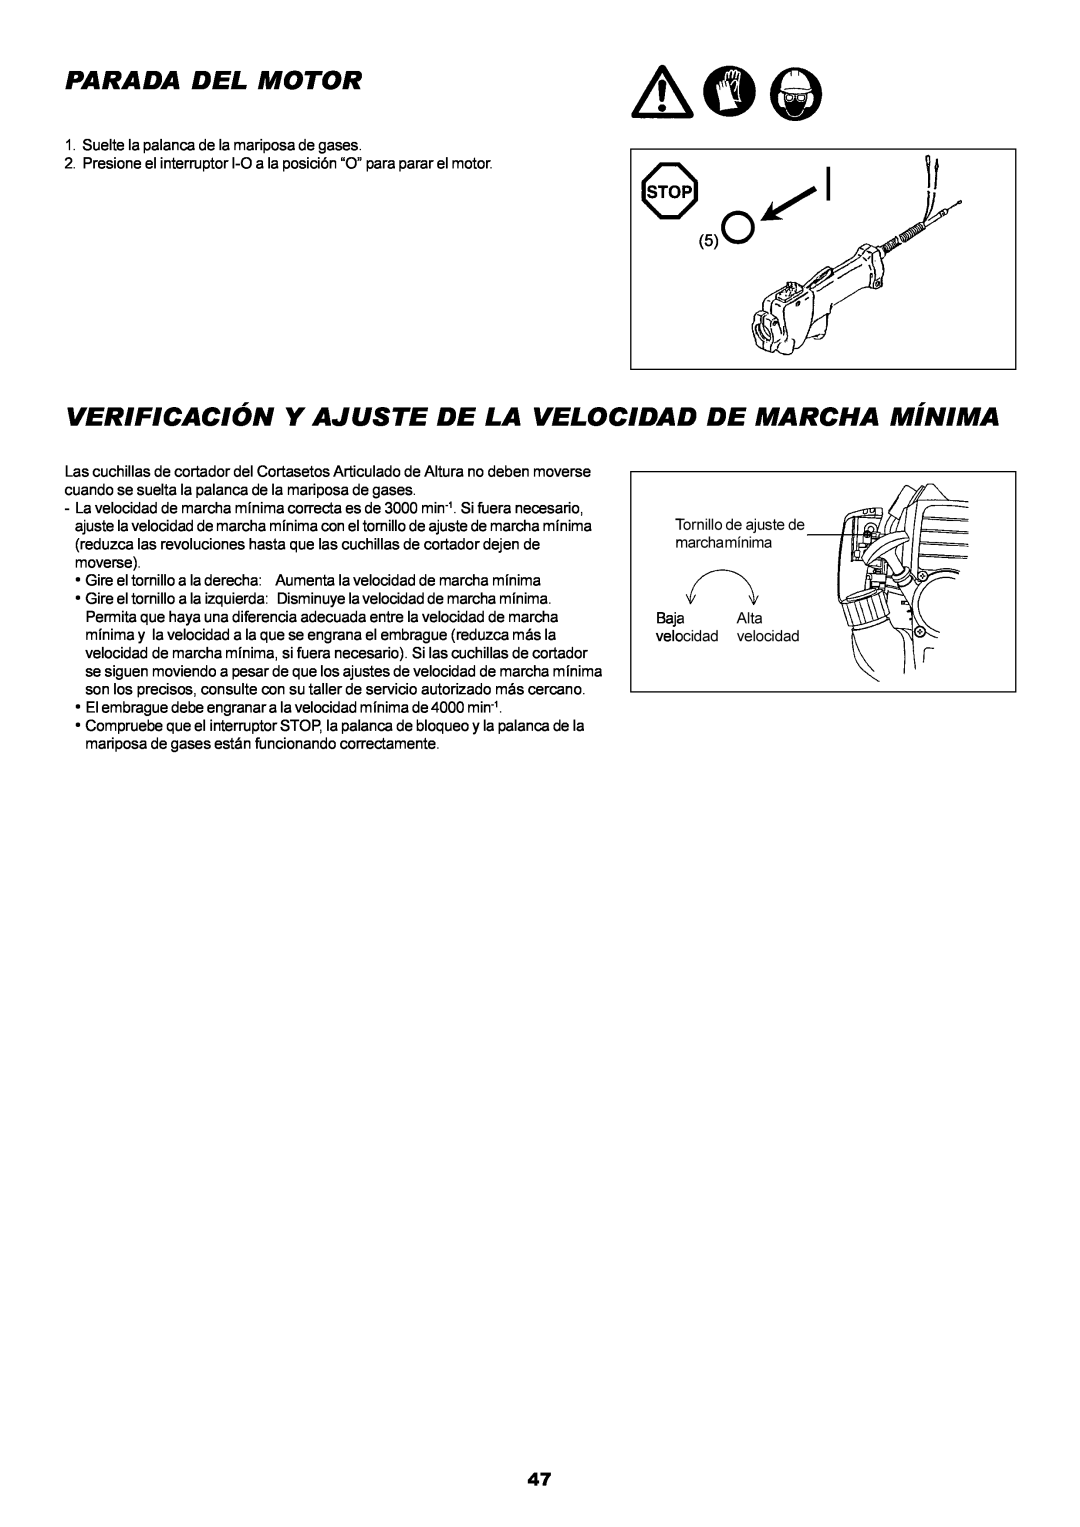 Dolmar MH-2556 instruction manual Parada Del Motor, Verificación Y Ajuste De La Velocidad De Marcha Mínima 